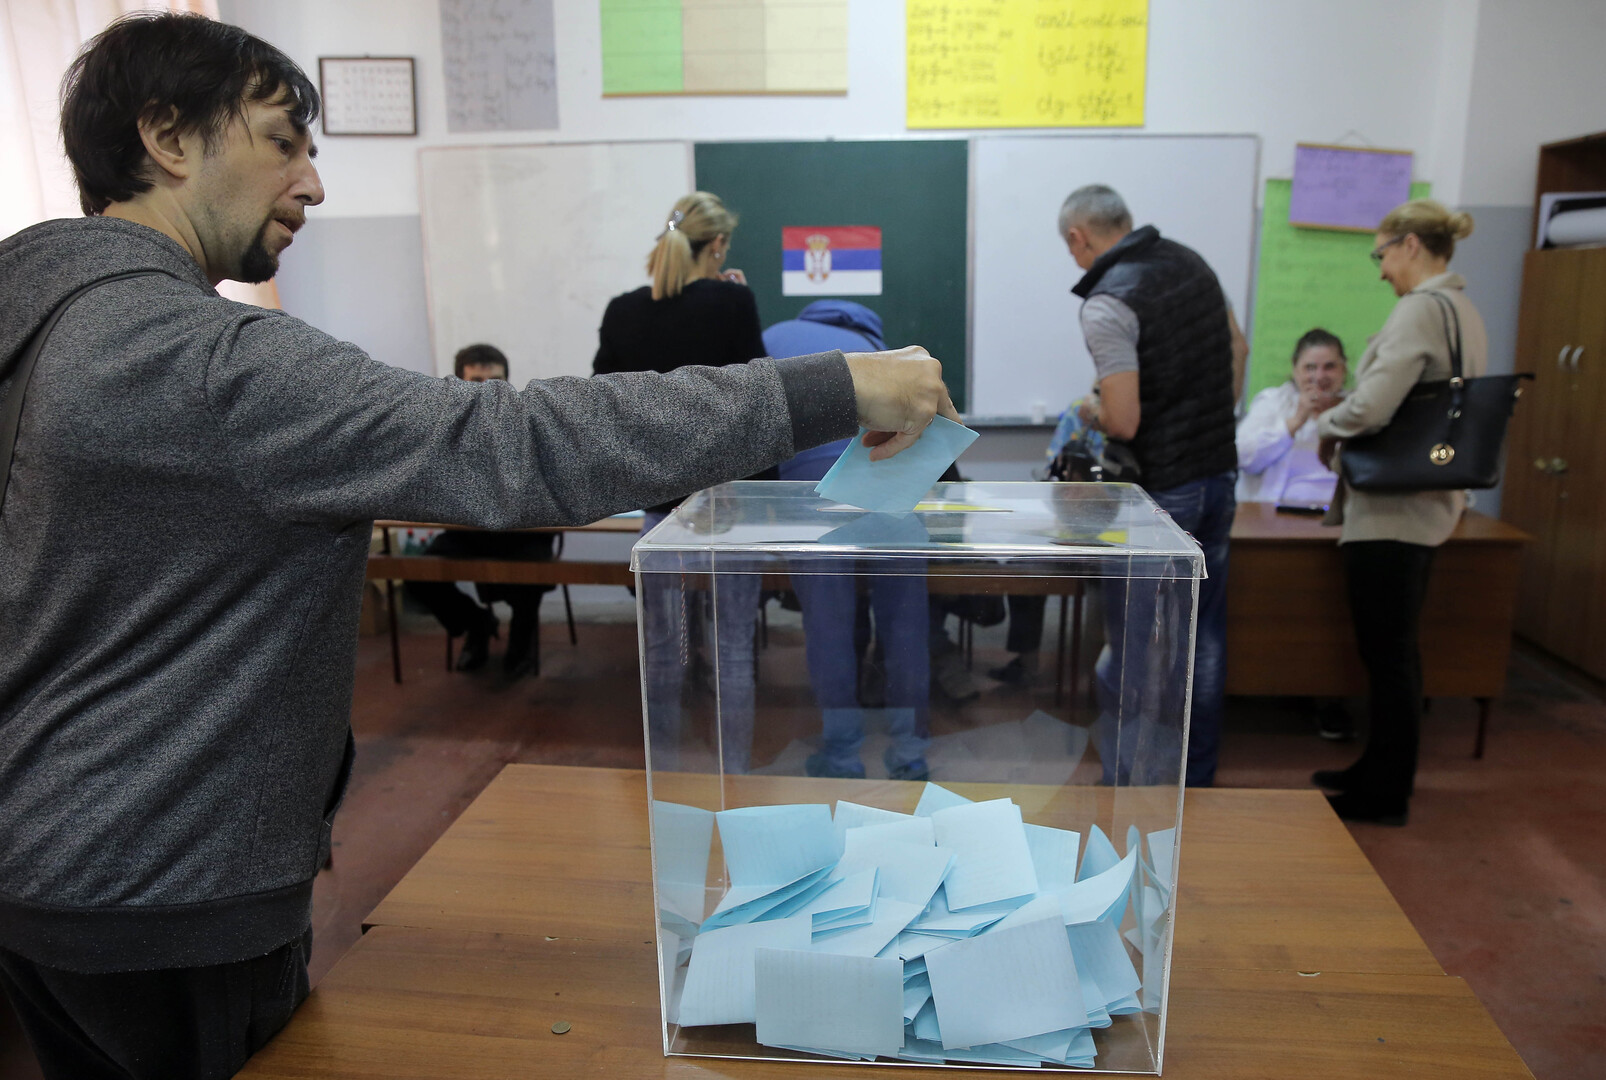 ائتلاف الحزب الحاكم في صربيا يعلن تحقيق نصر ساحق في الانتخابات البلدية